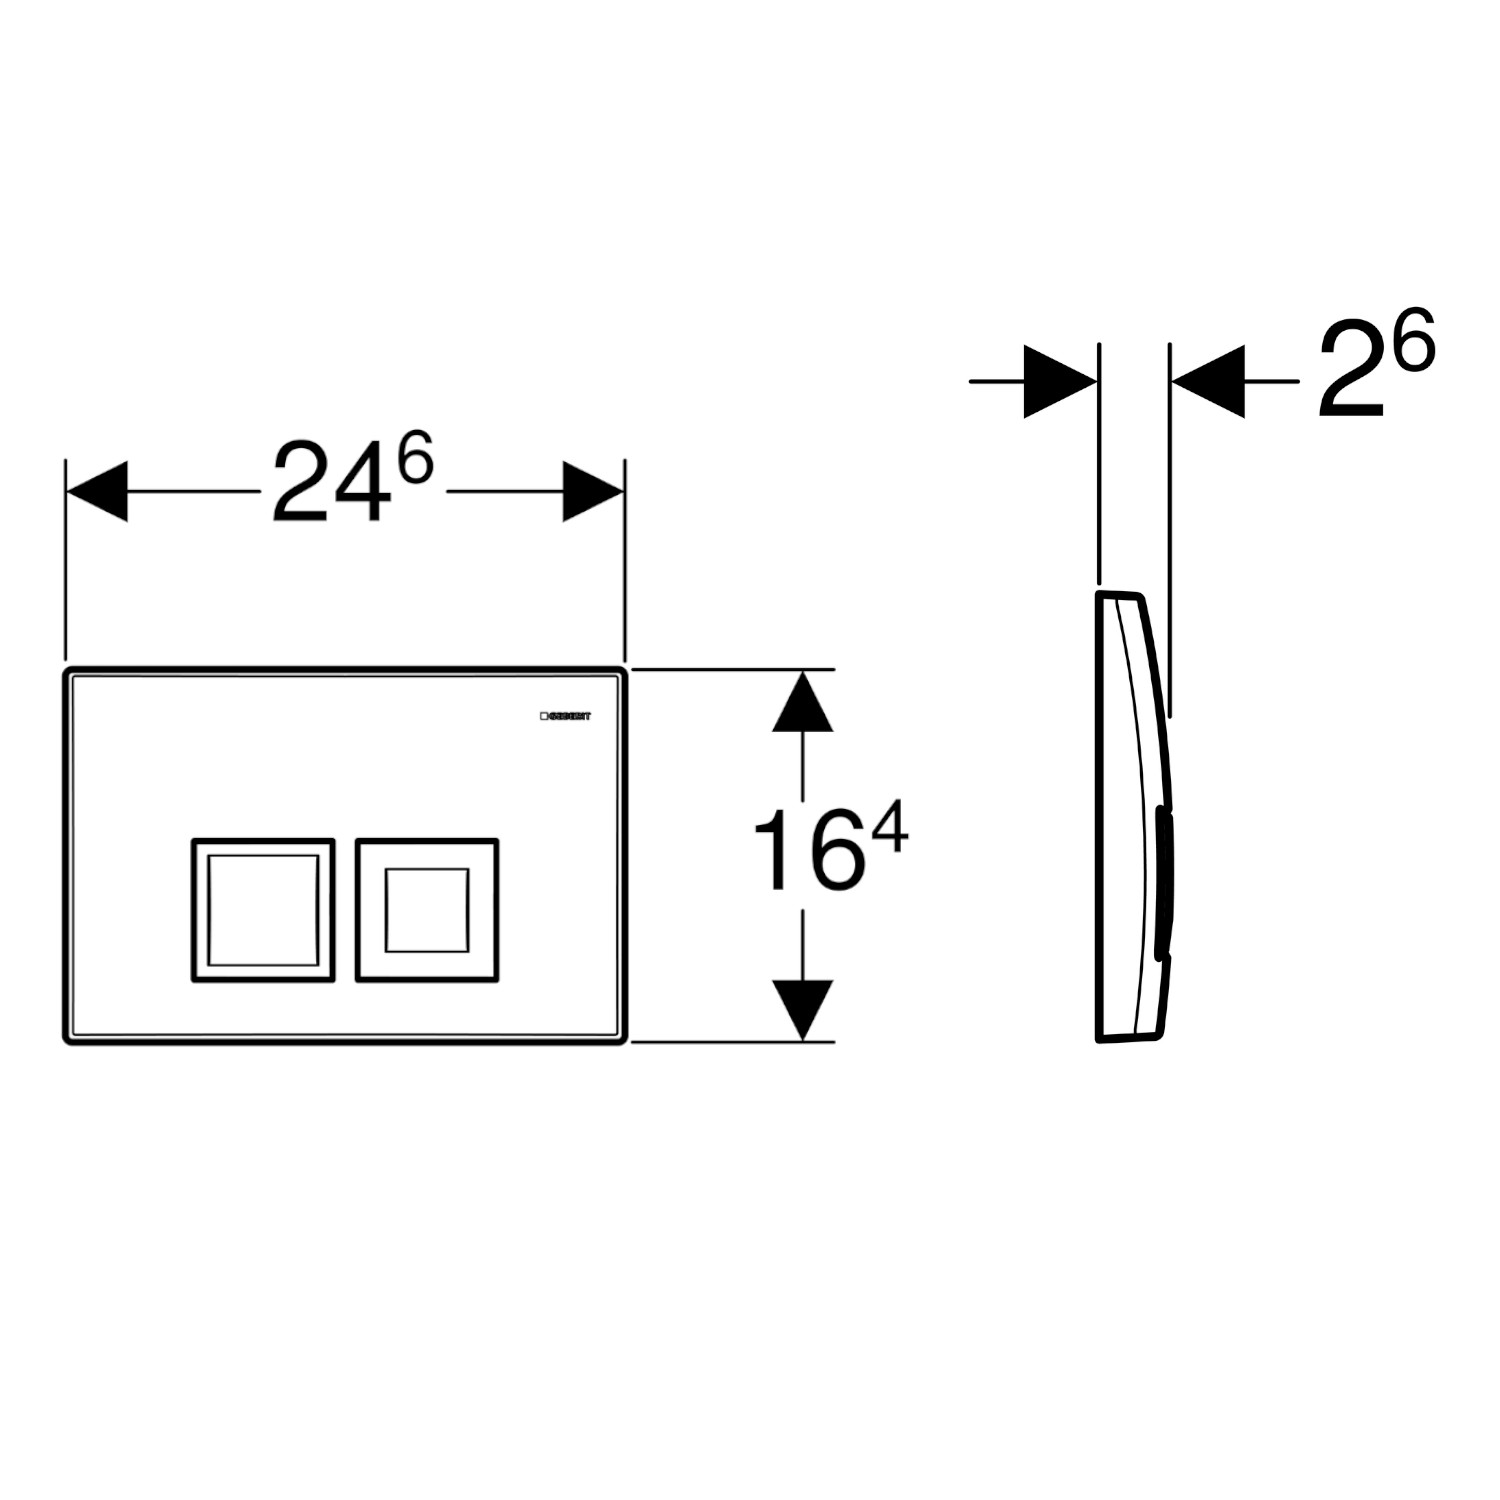 Targa Wand-WC mit DuofixBasic Vorwandelement, 112 cm mit Delta UP-Spülkasten (UP 100) und Delta50 Betätigungsplatte